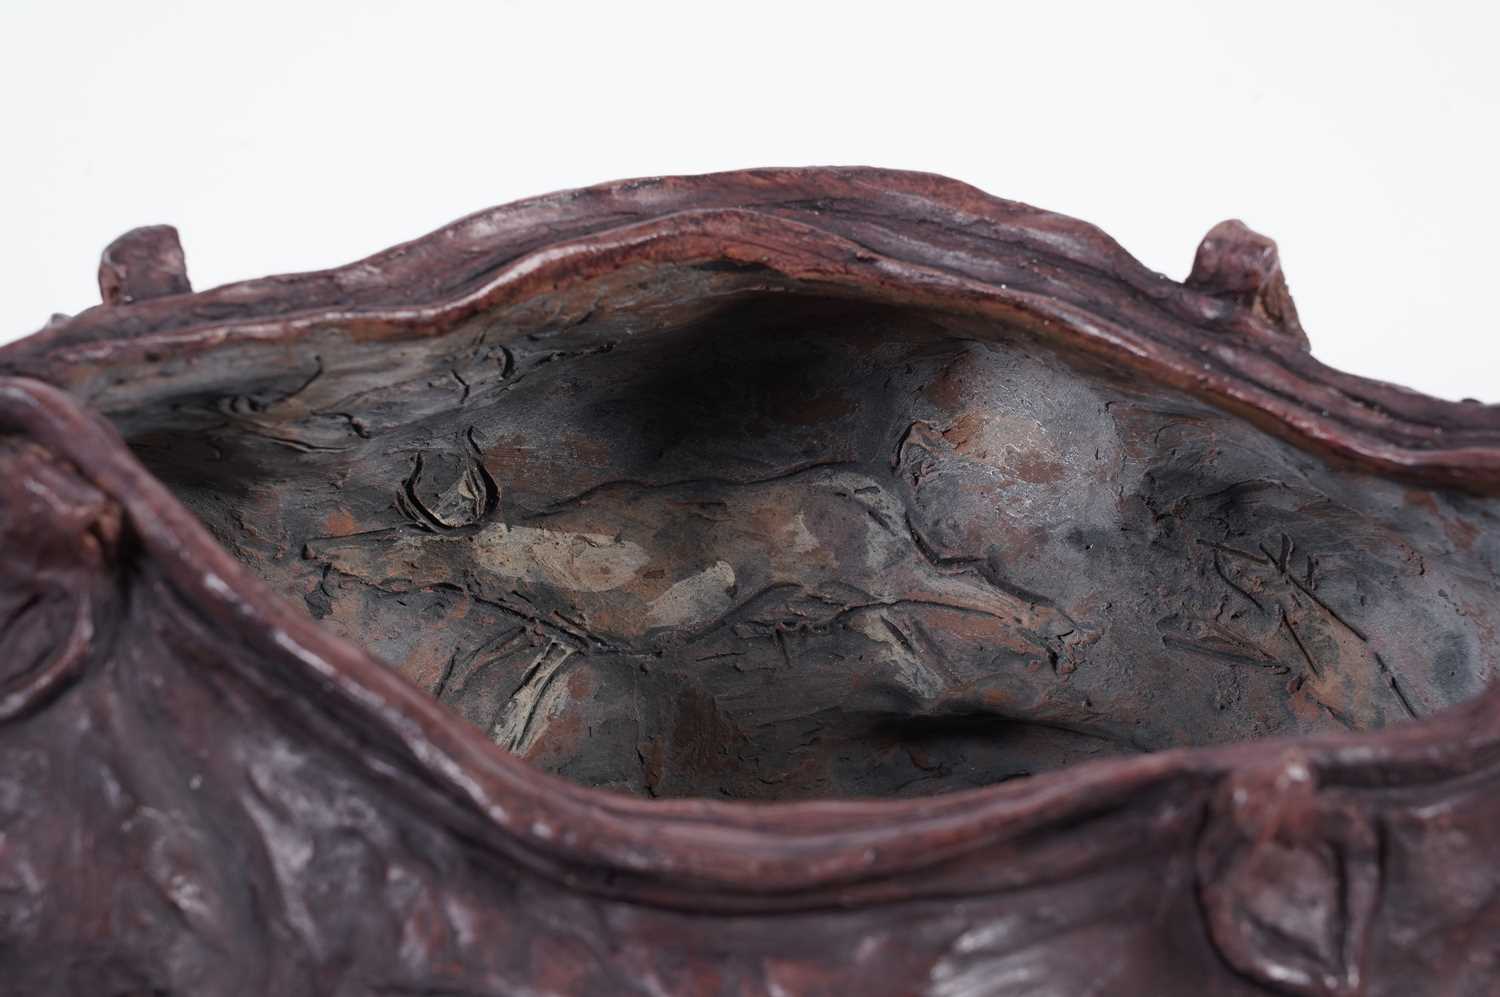 Lisa Delarny - Cowskin Handbag | clay sculpture - Image 8 of 8